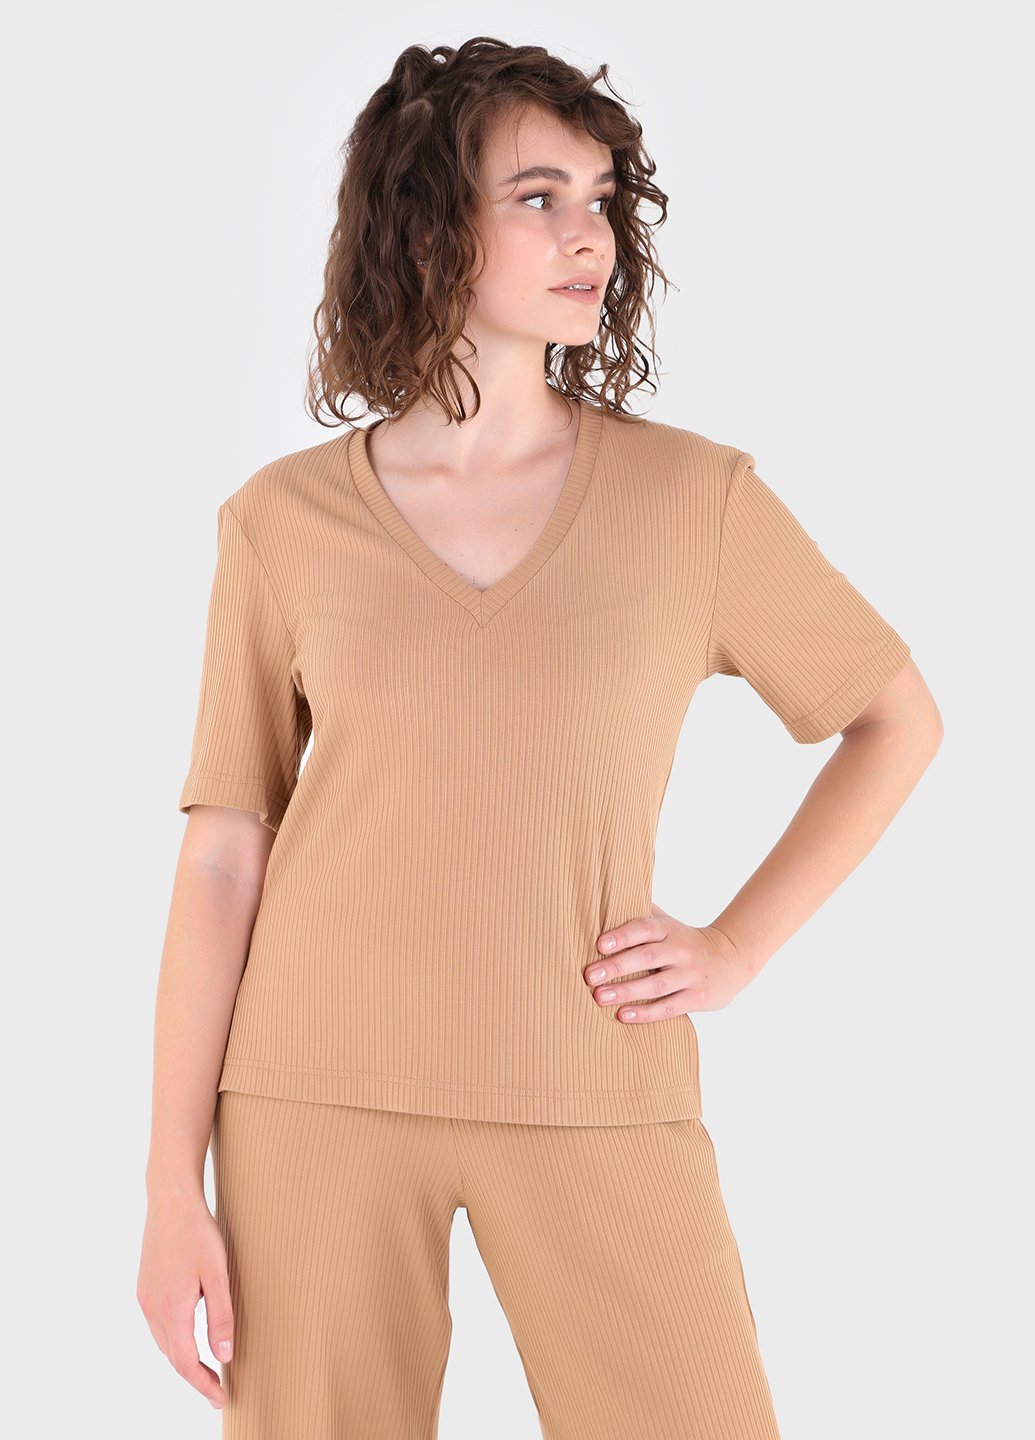 Купить Легкая футболка женская в рубчик Merlini Корунья 800000028 - Песочный, 42-44 в интернет-магазине